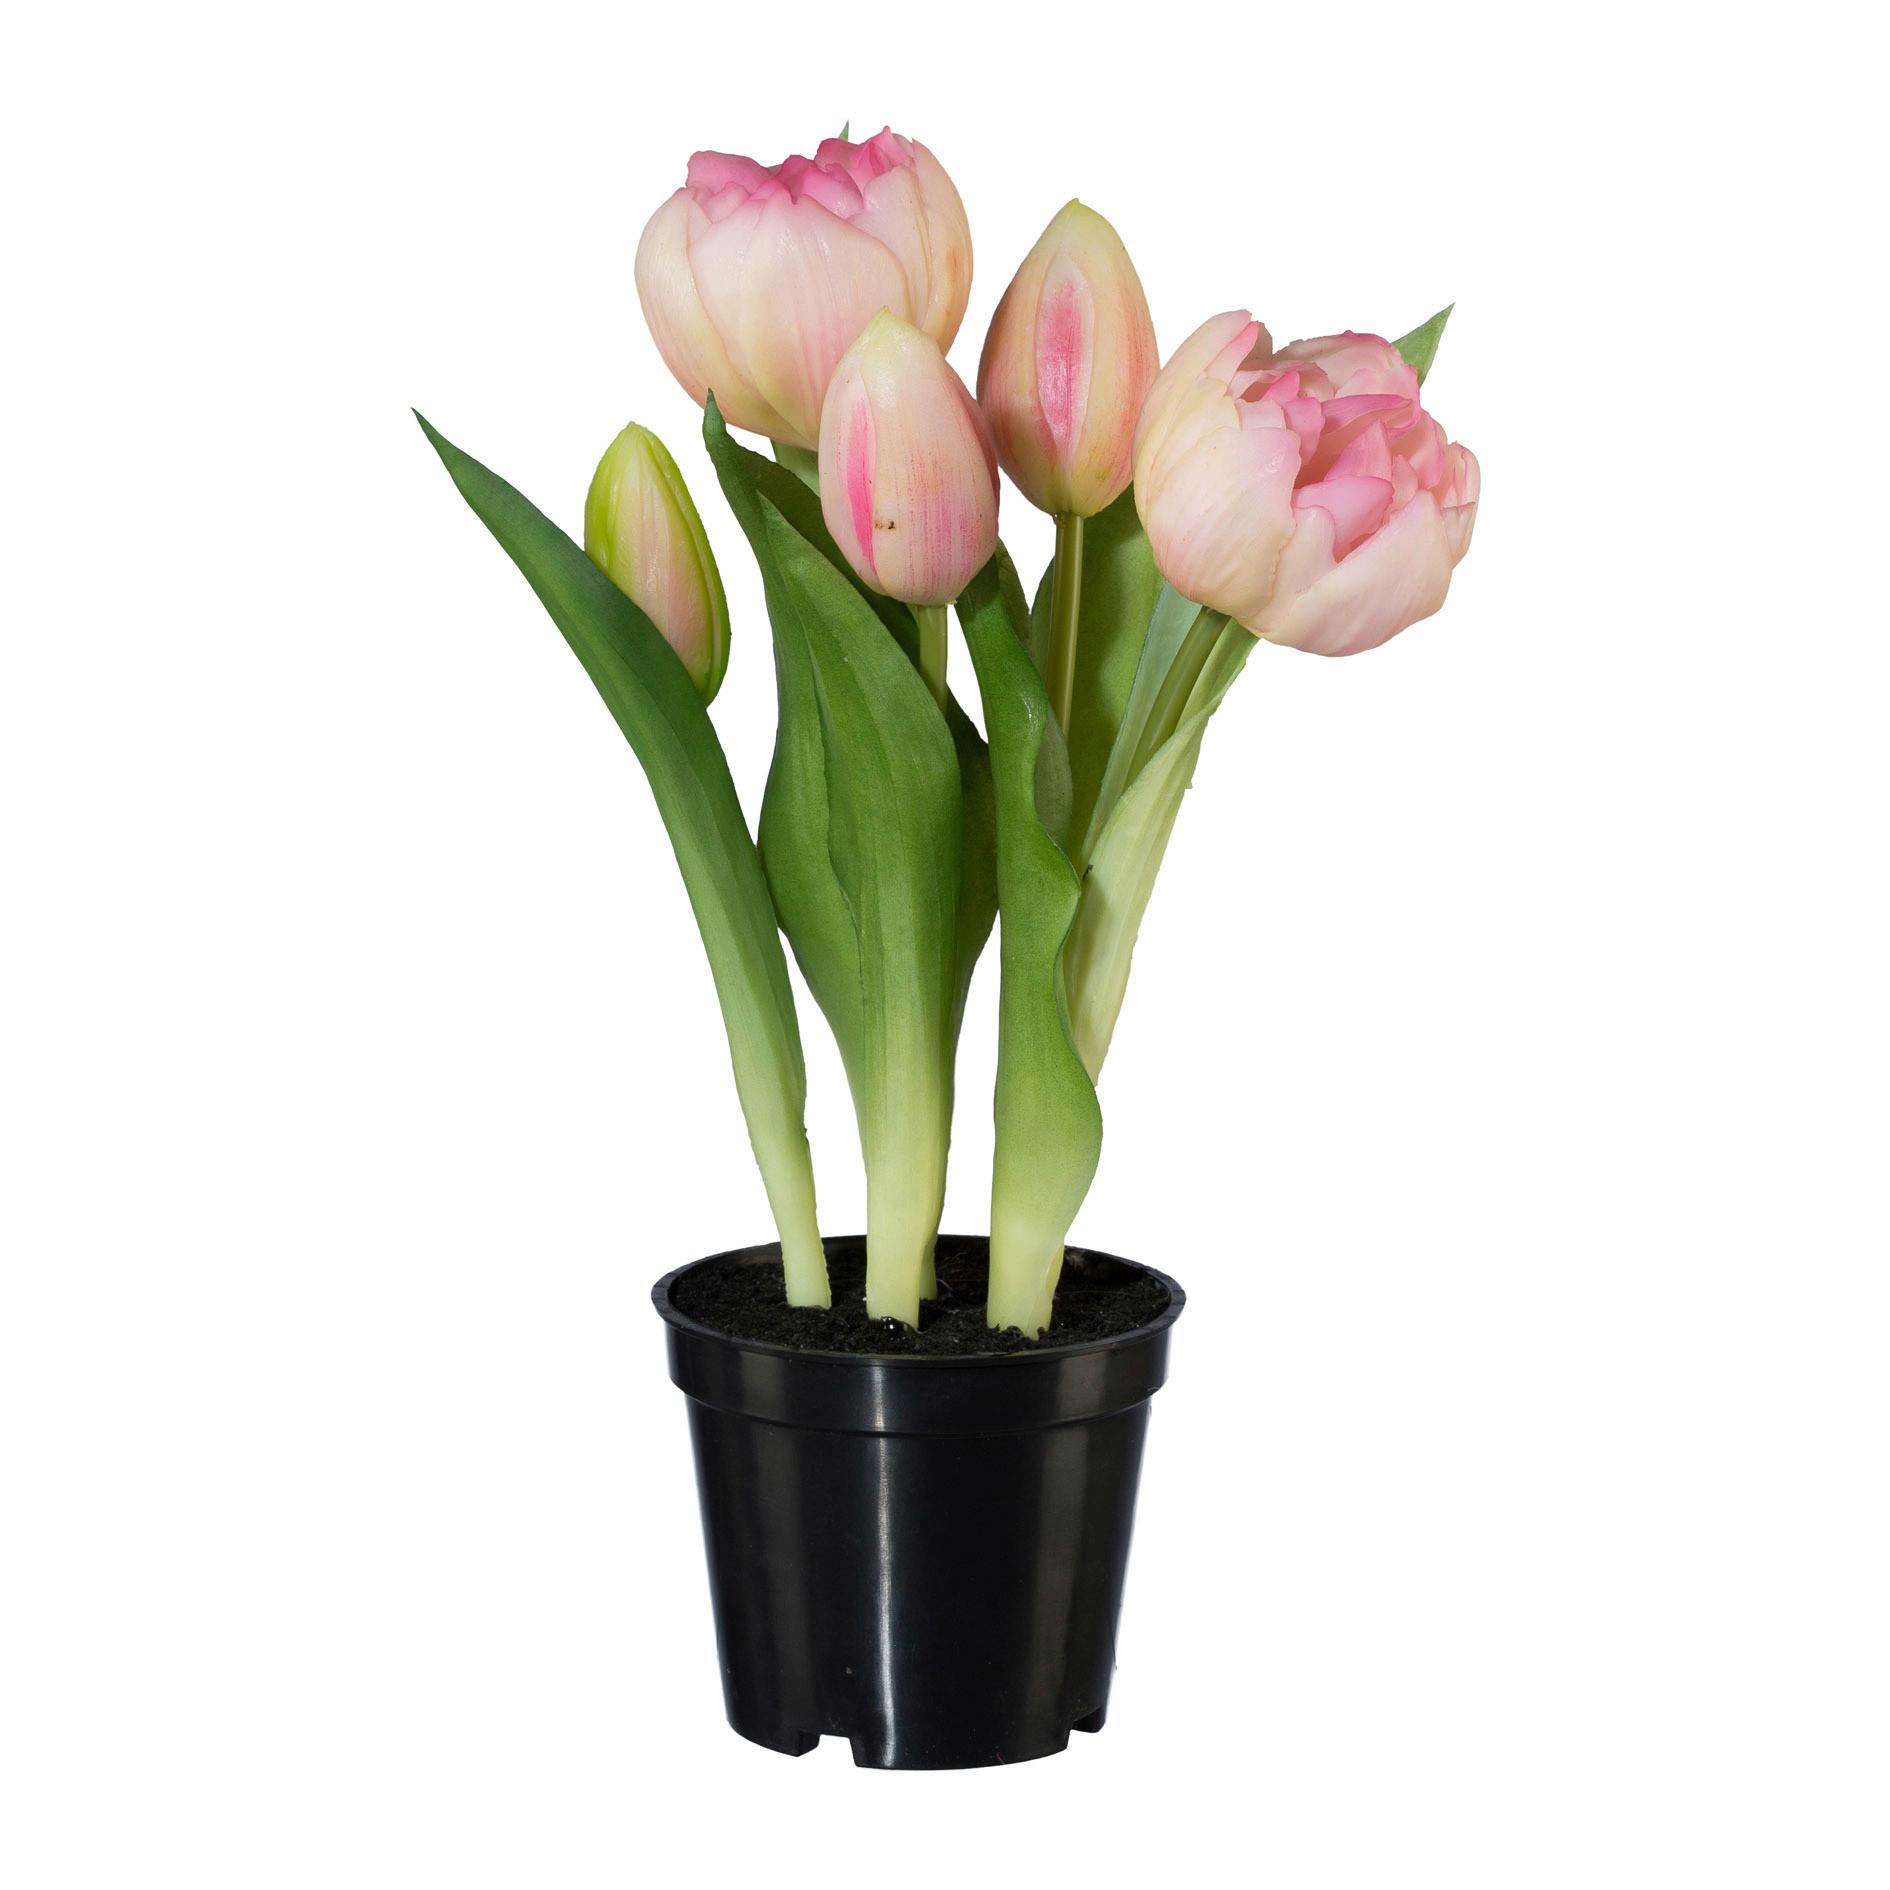 Műnövény Tulipán - Rózsaszín/Zöld, Basics, Műanyag (25cm) - Modern Living